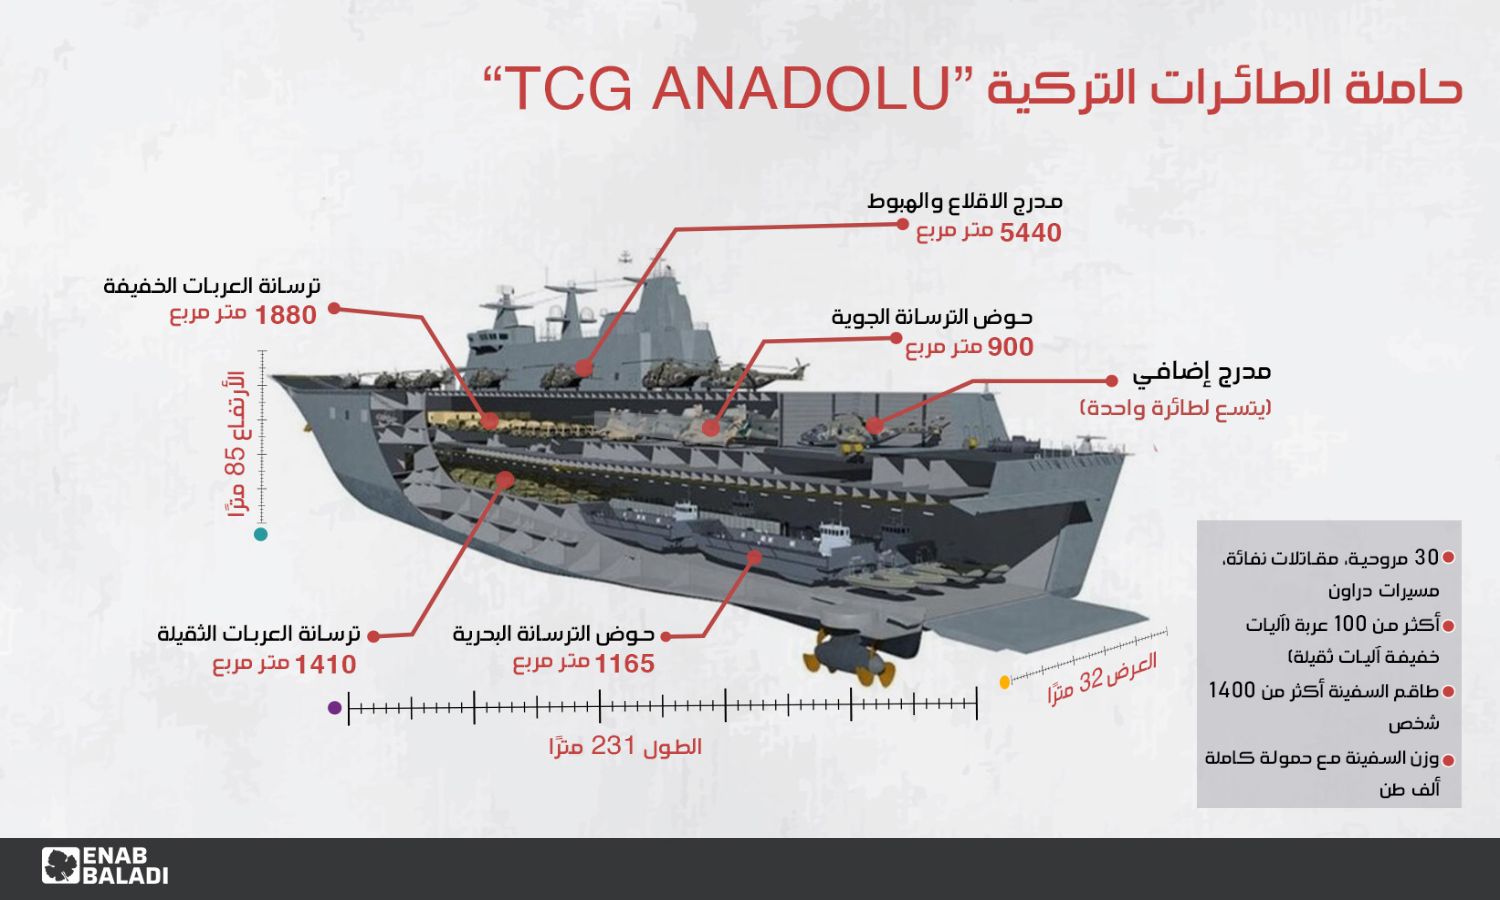  مواصفات حاملة الطائرات التركية "TCG ANADOLU"